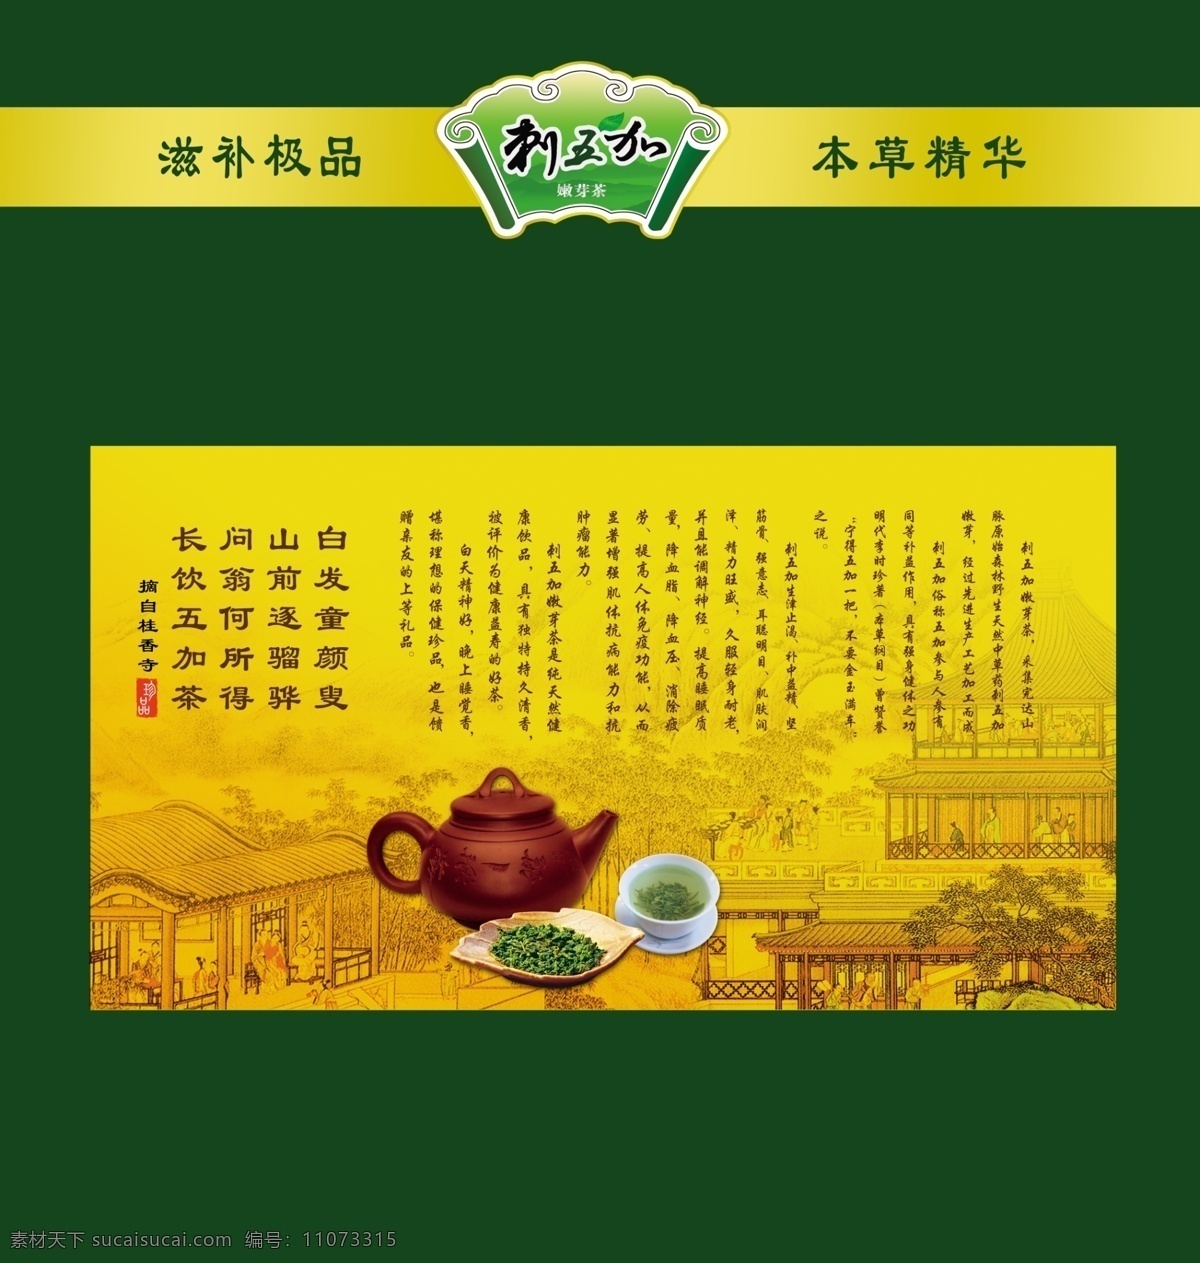 茶叶包装 茶叶 茶包装 复古包装 绿色包装盒 茶壶 背景 清明上河图 底纹 刺五加 包装设计 广告设计模板 源文件